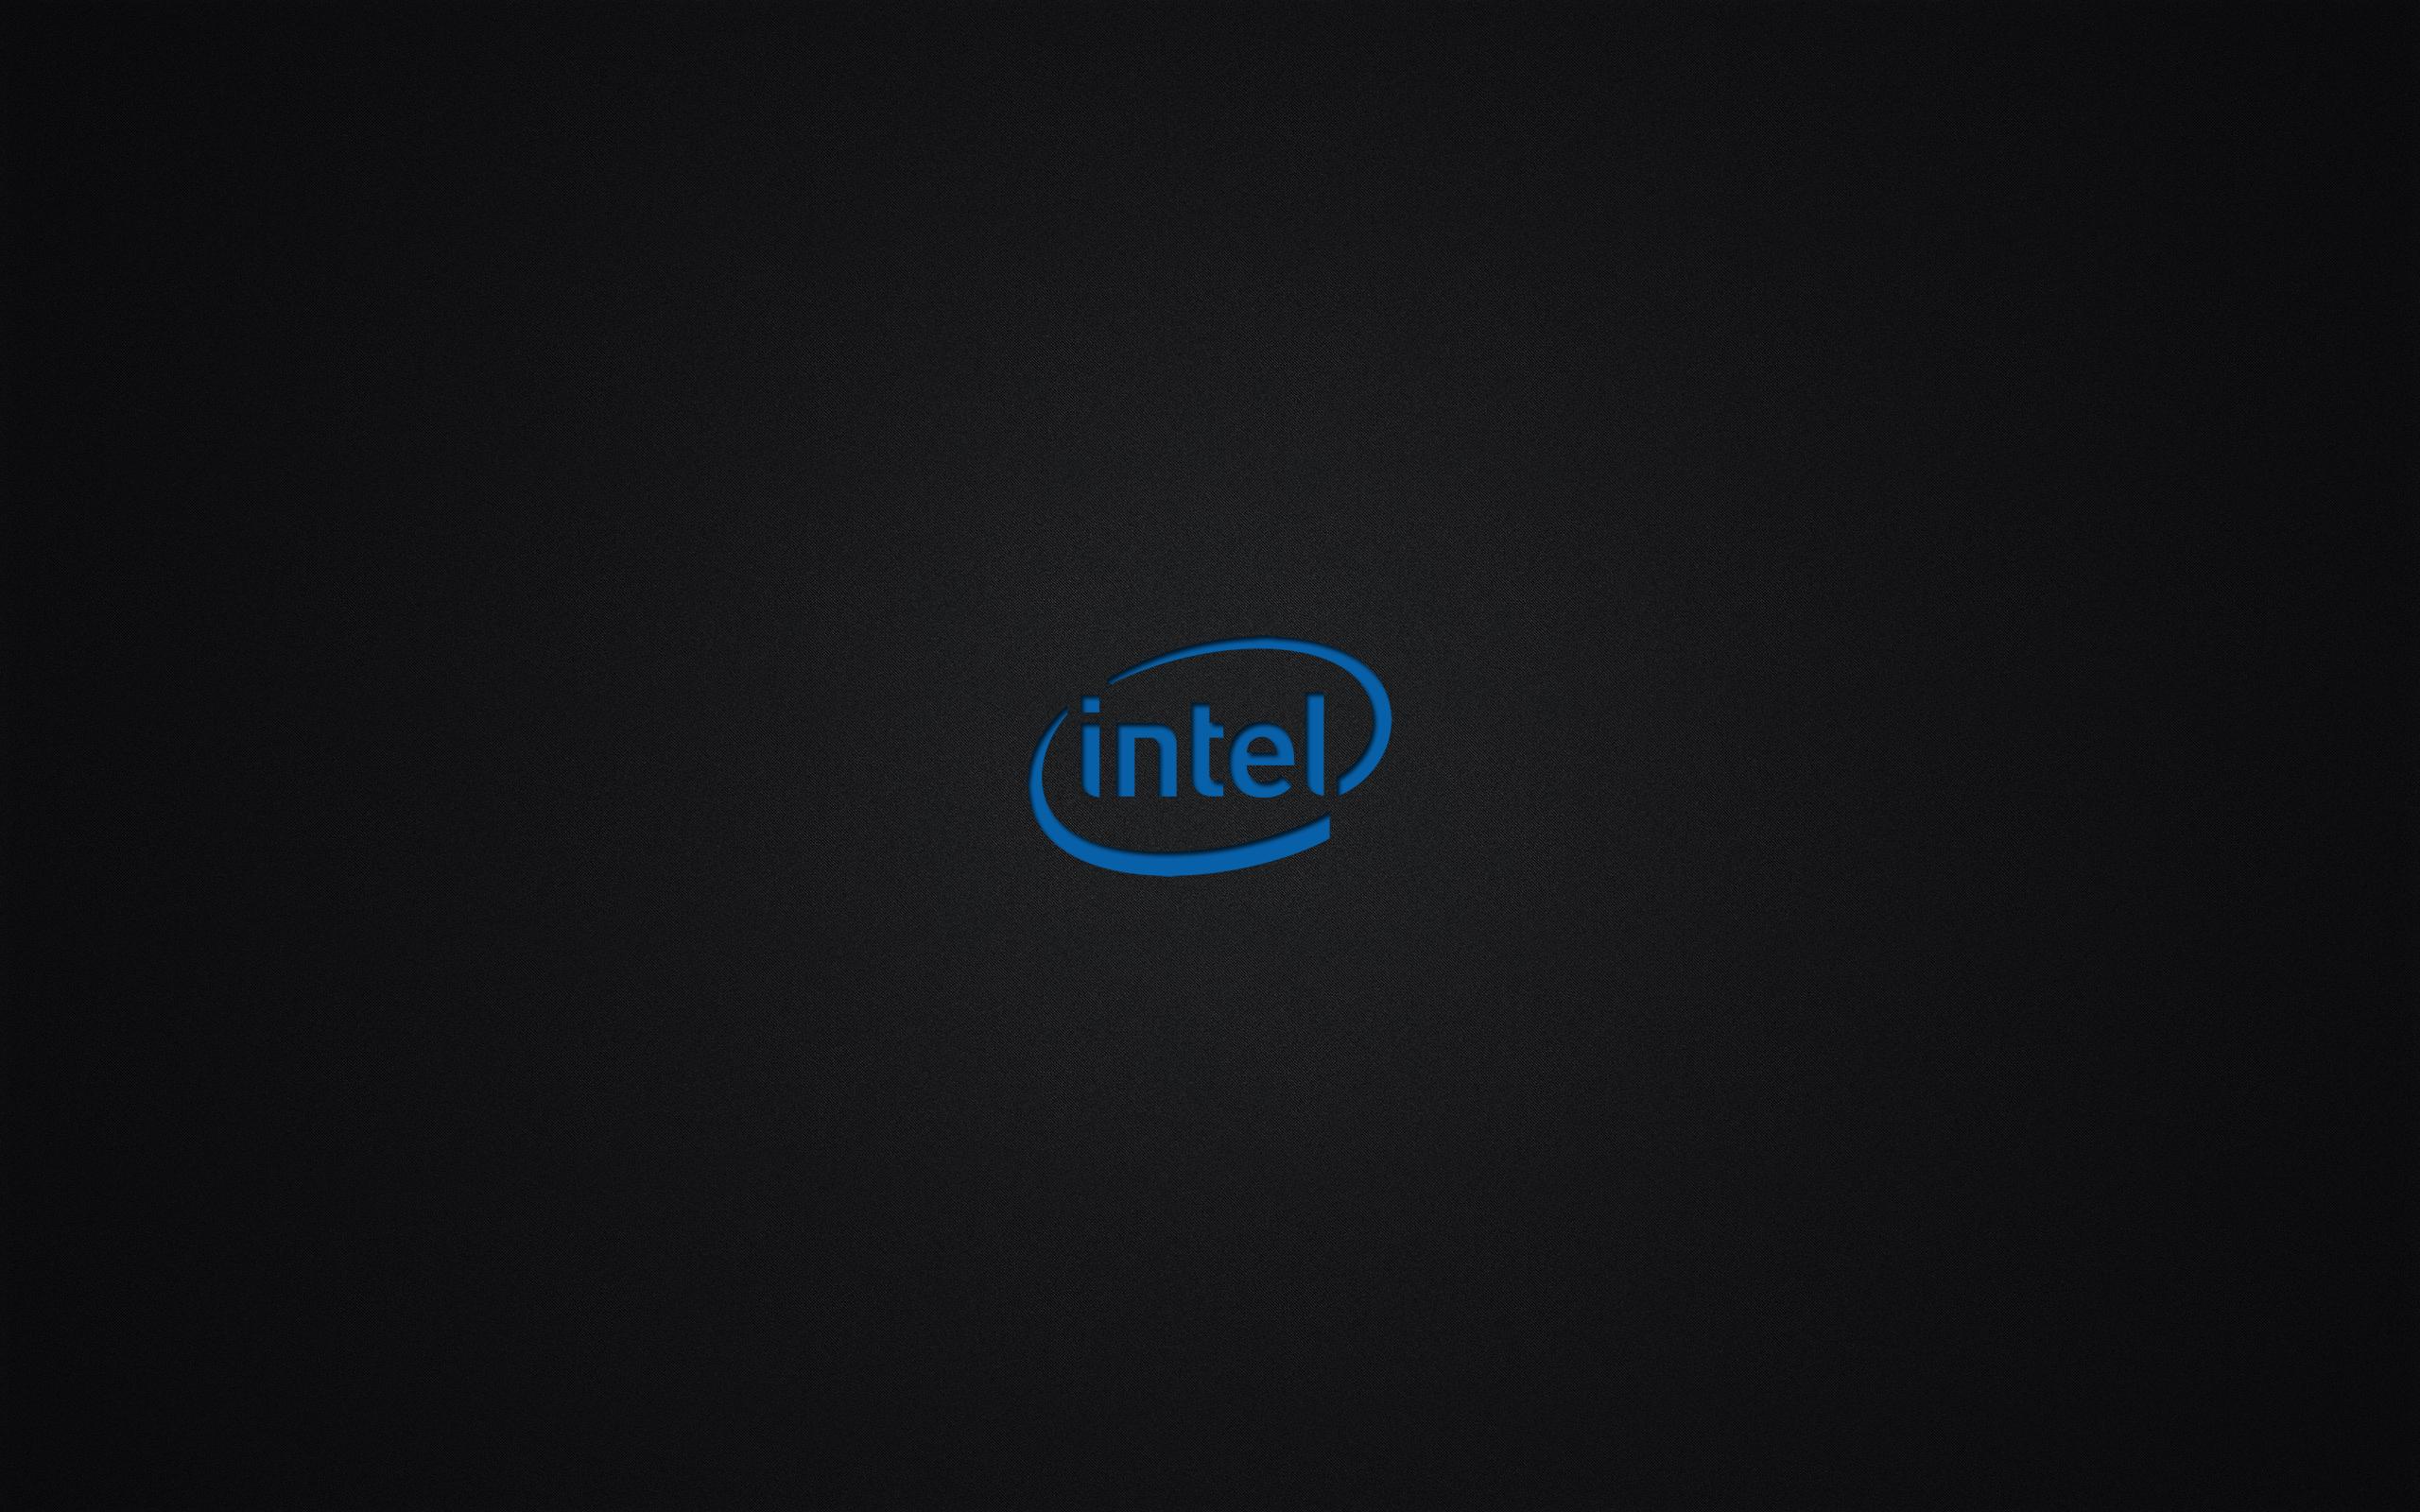 Pics For Intel I5 Wallpaper